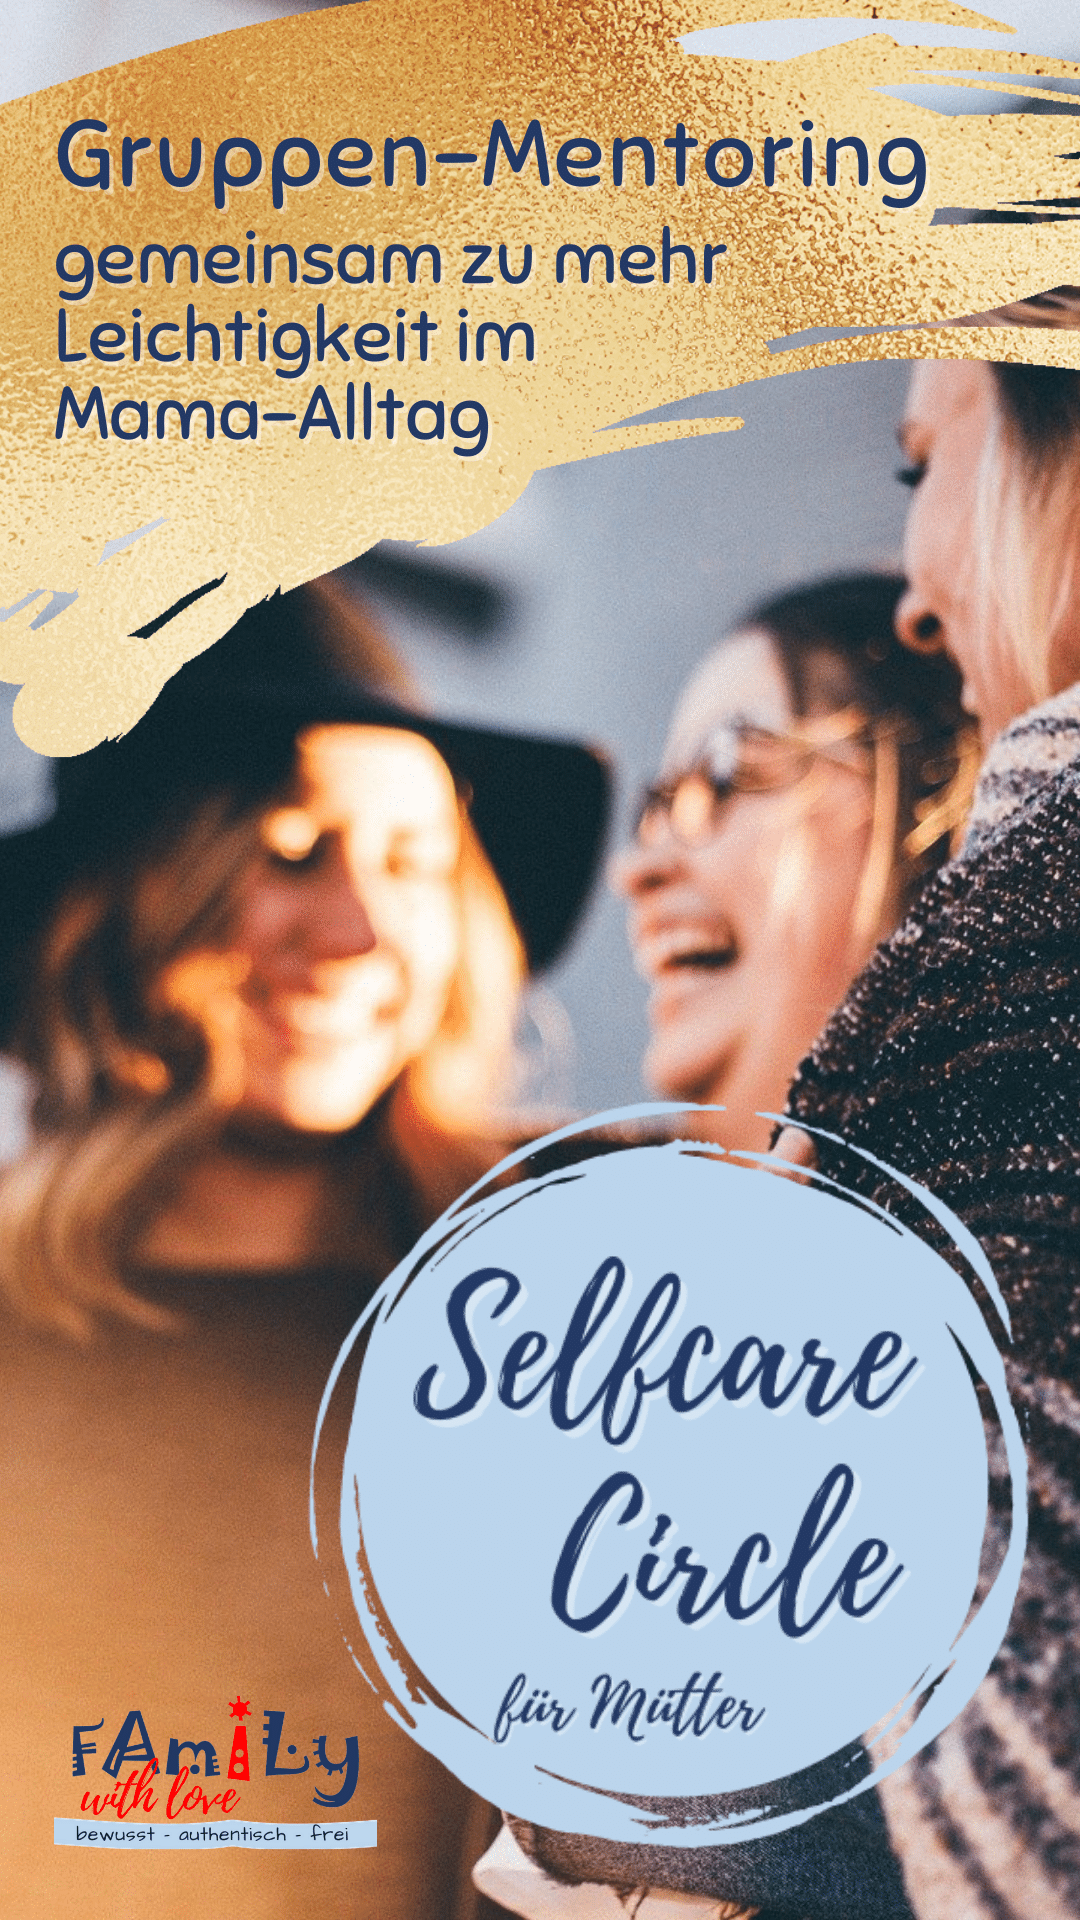 Selfcare-Circle Gemeinsam zu mehr Leichtigkeit im Mama-Alltag